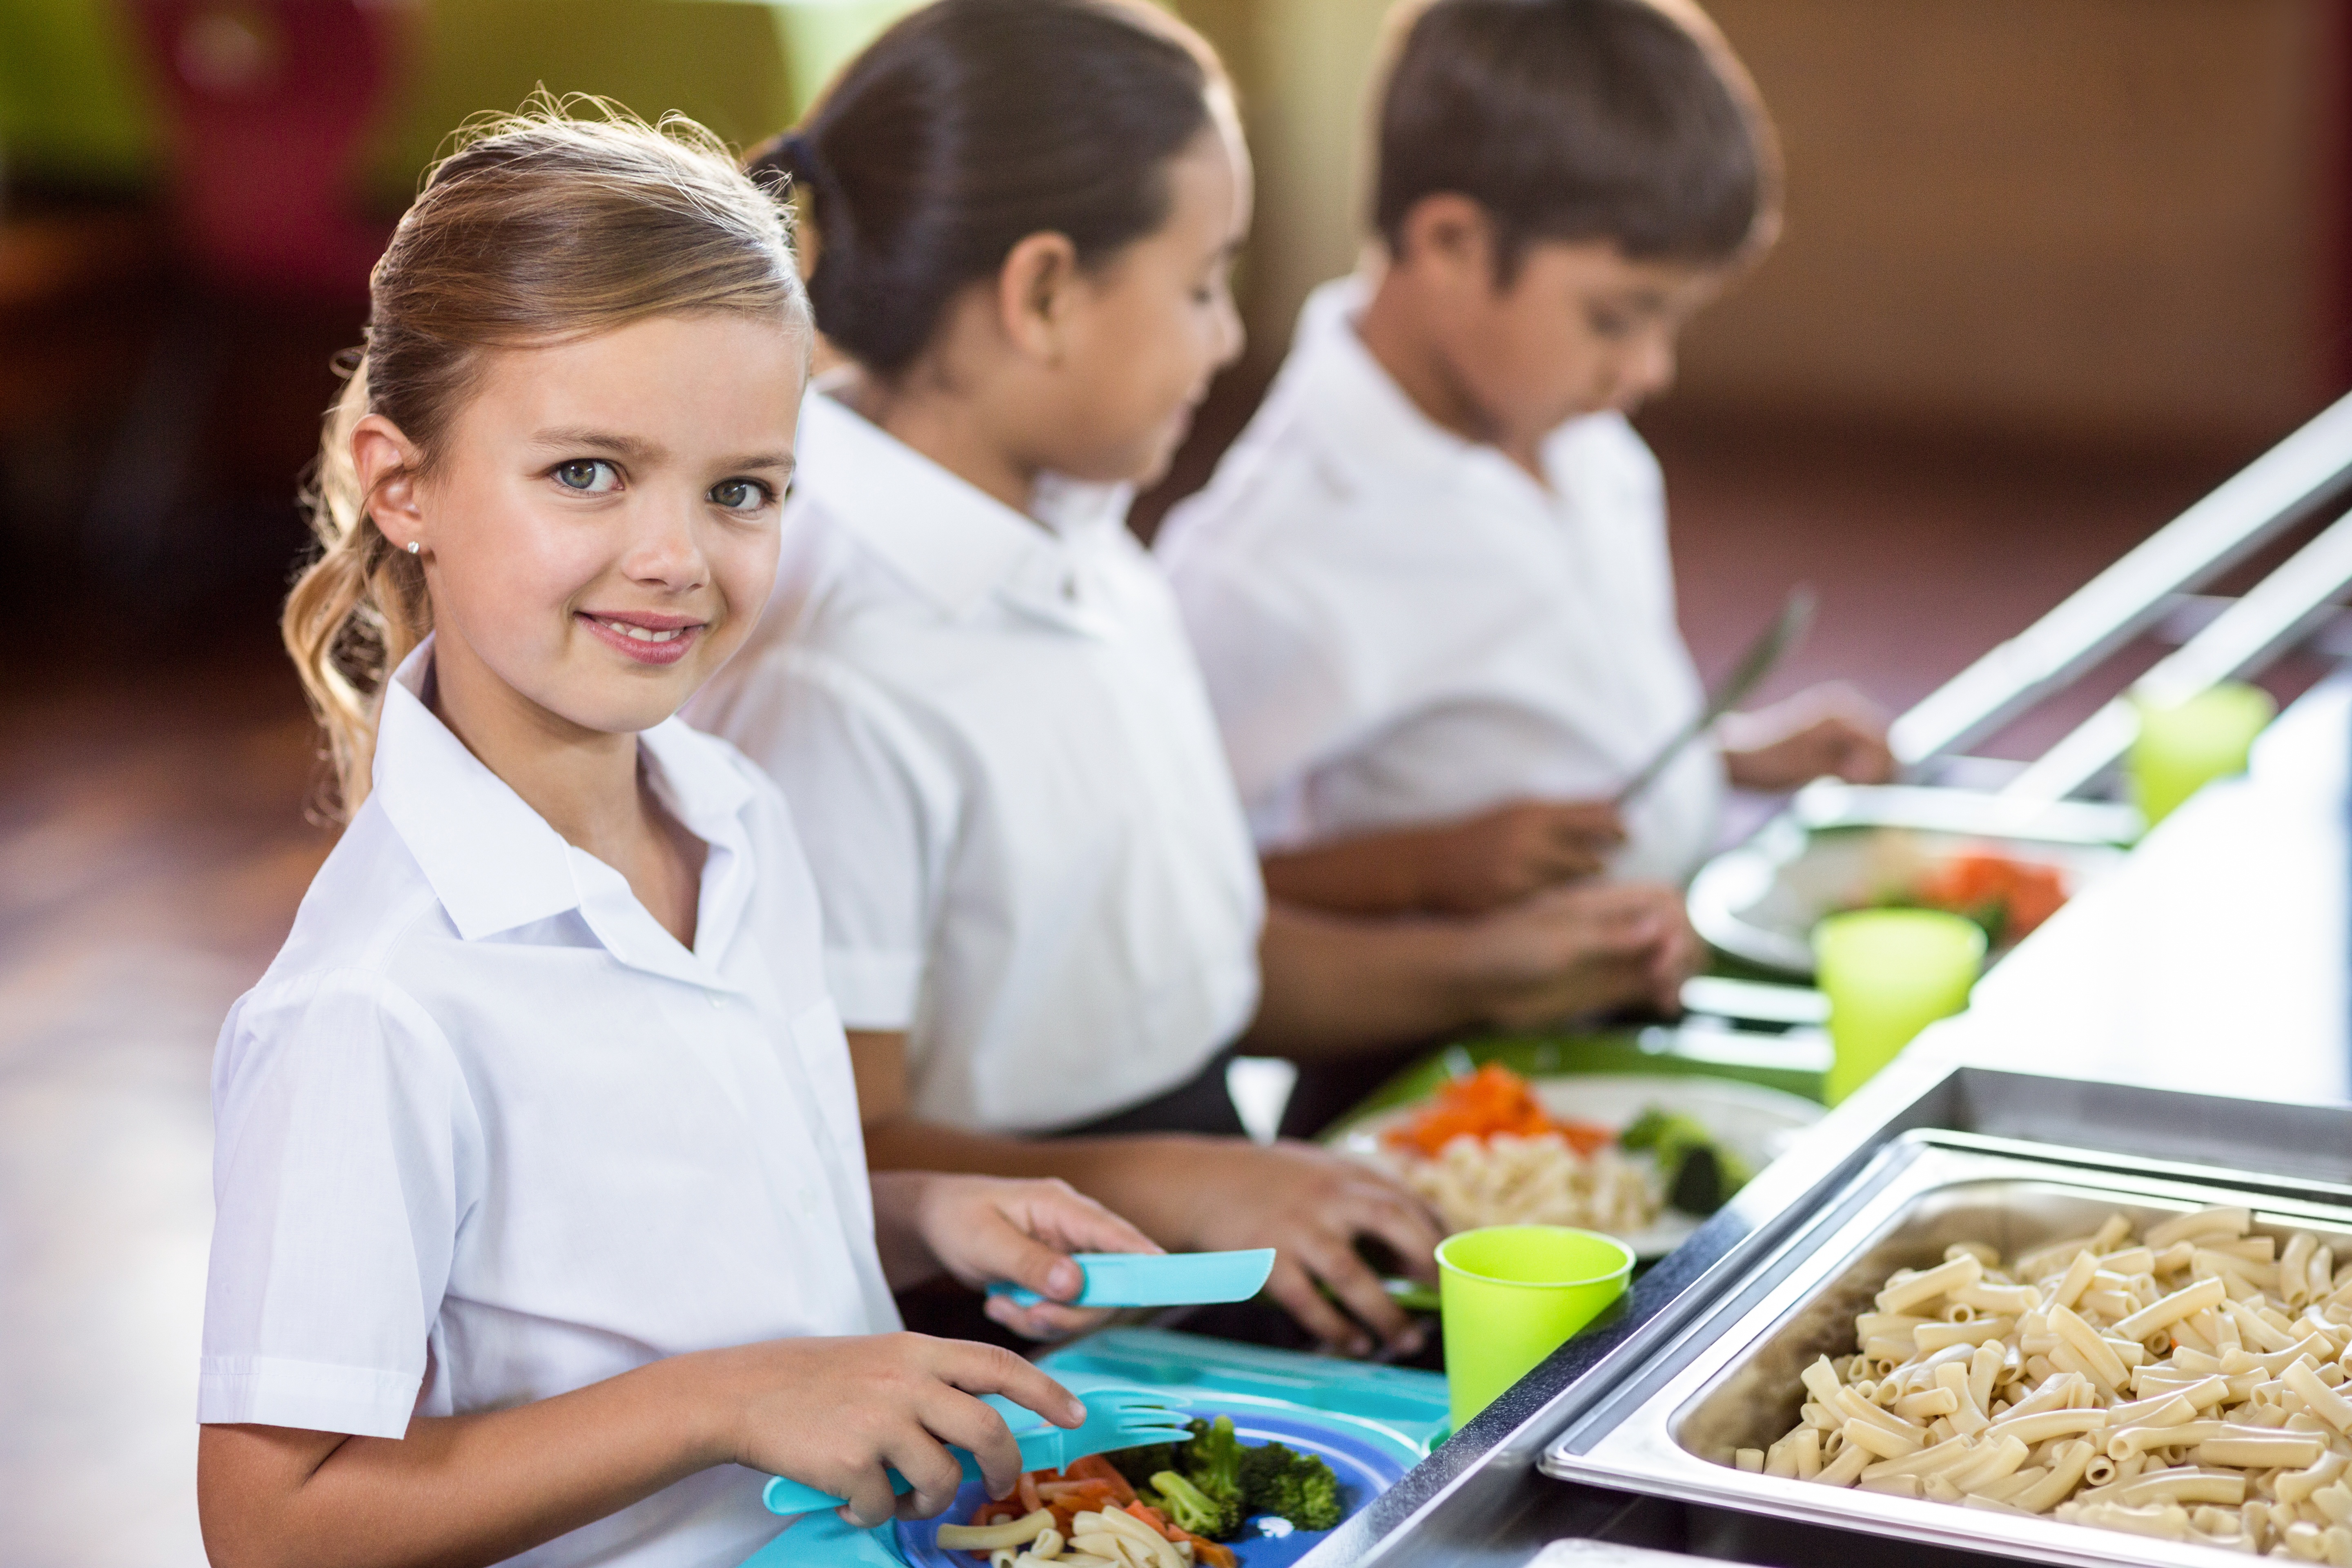 Ребенок овз питание в школе. Дети в столовой. Школьники в столовой. Обед школьника. Питание в школе.